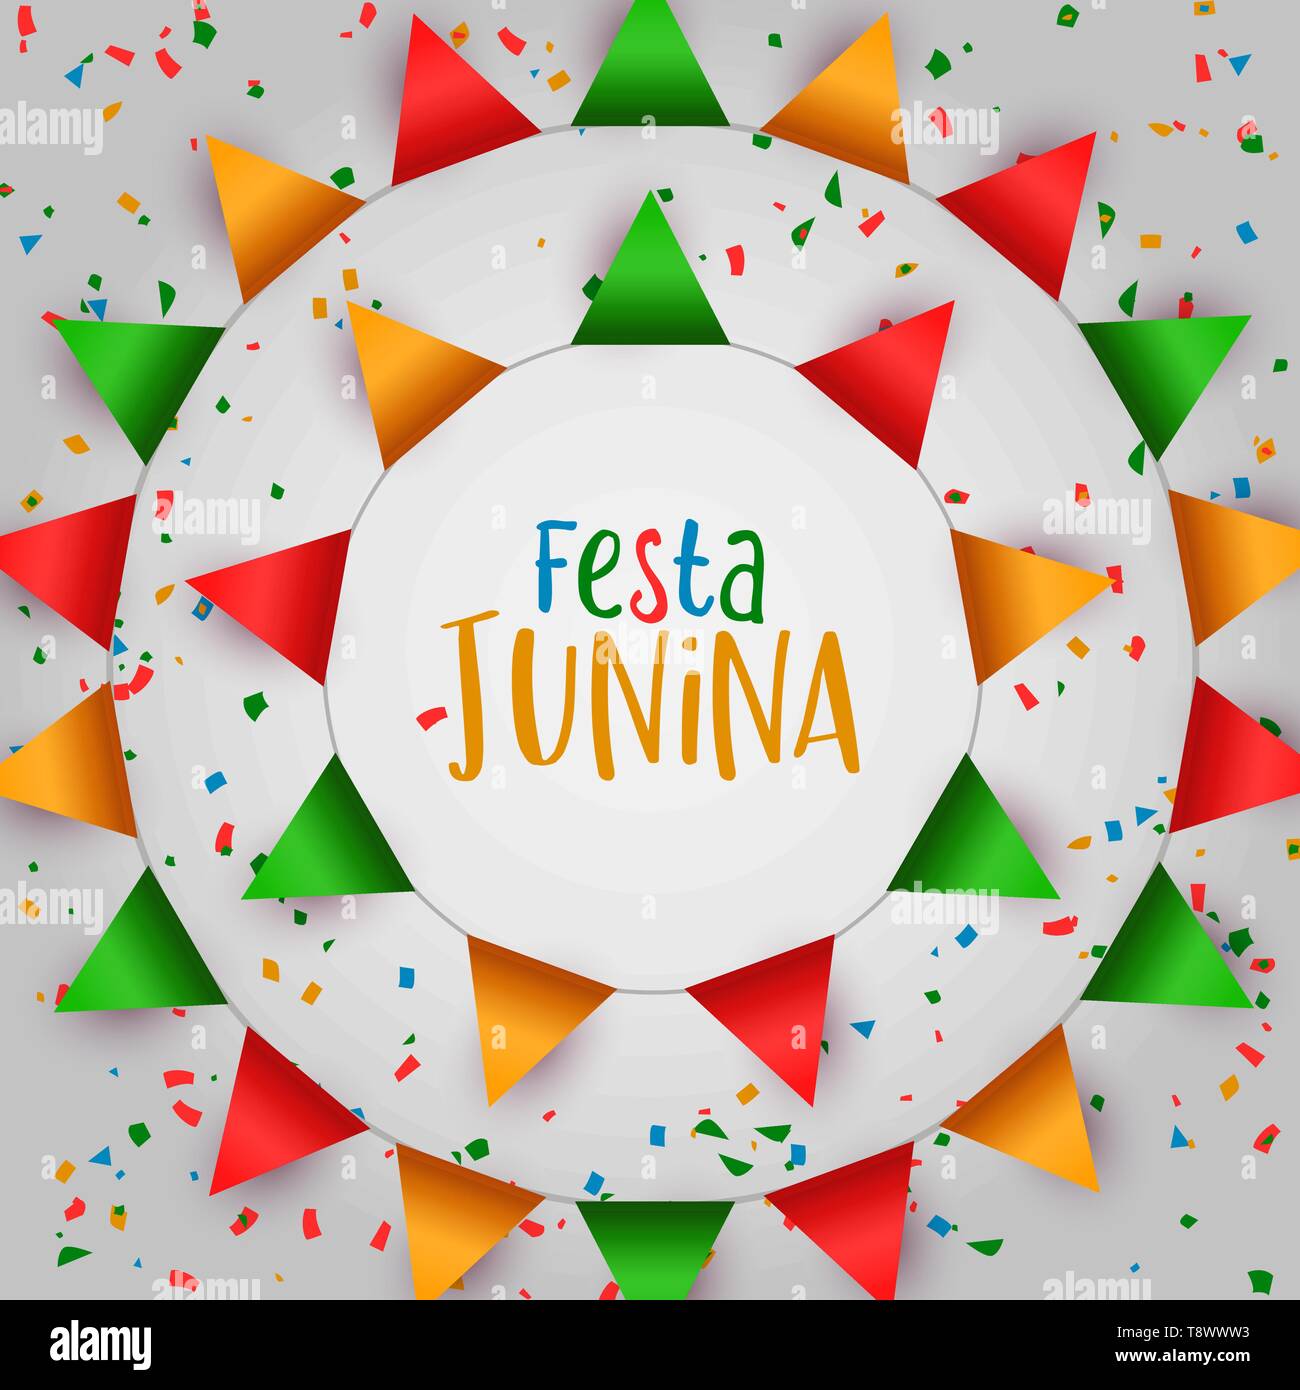 Festa Junina Feiertag Illustration. Bunte Fahnen und Papier Konfetti für traditionelle Brasilien Feier im Juni. Stock Vektor